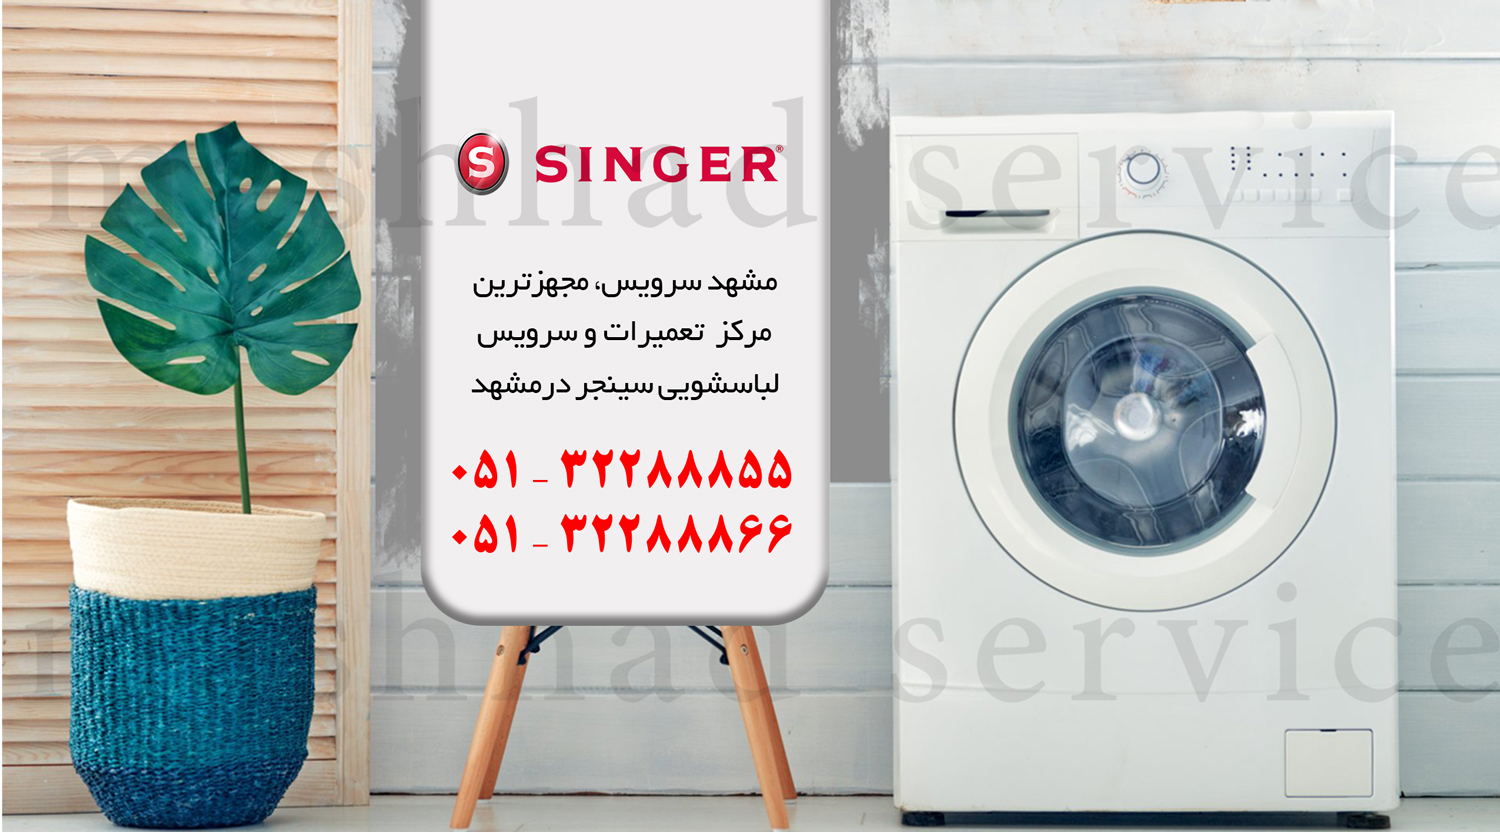 تعمیر ماشین لباسشویی سینجر در مشهد